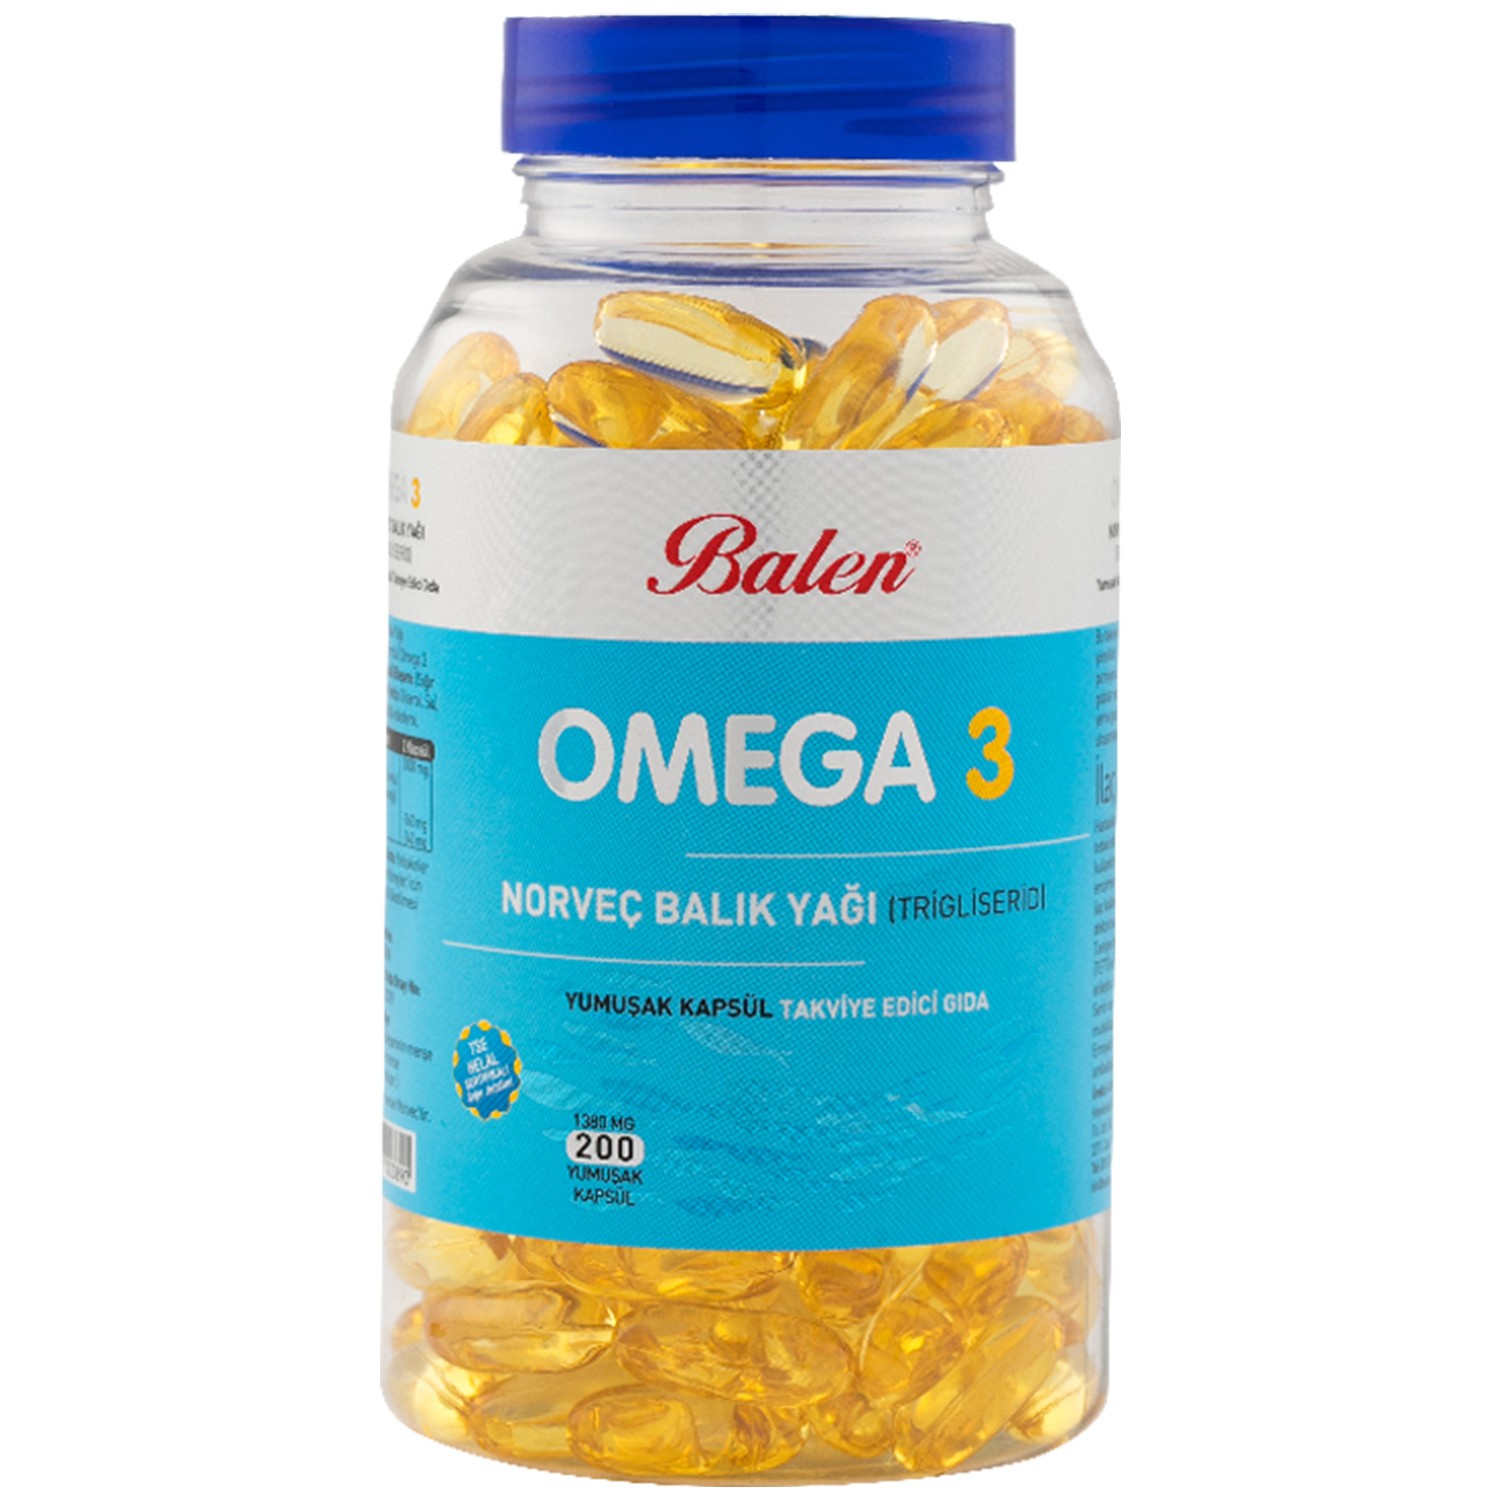 Рыбий жир Balen Omega 3, 200 капсул, 1380 мг рыбий жир nordic naturals omega focus 1280 мг 60 капсул